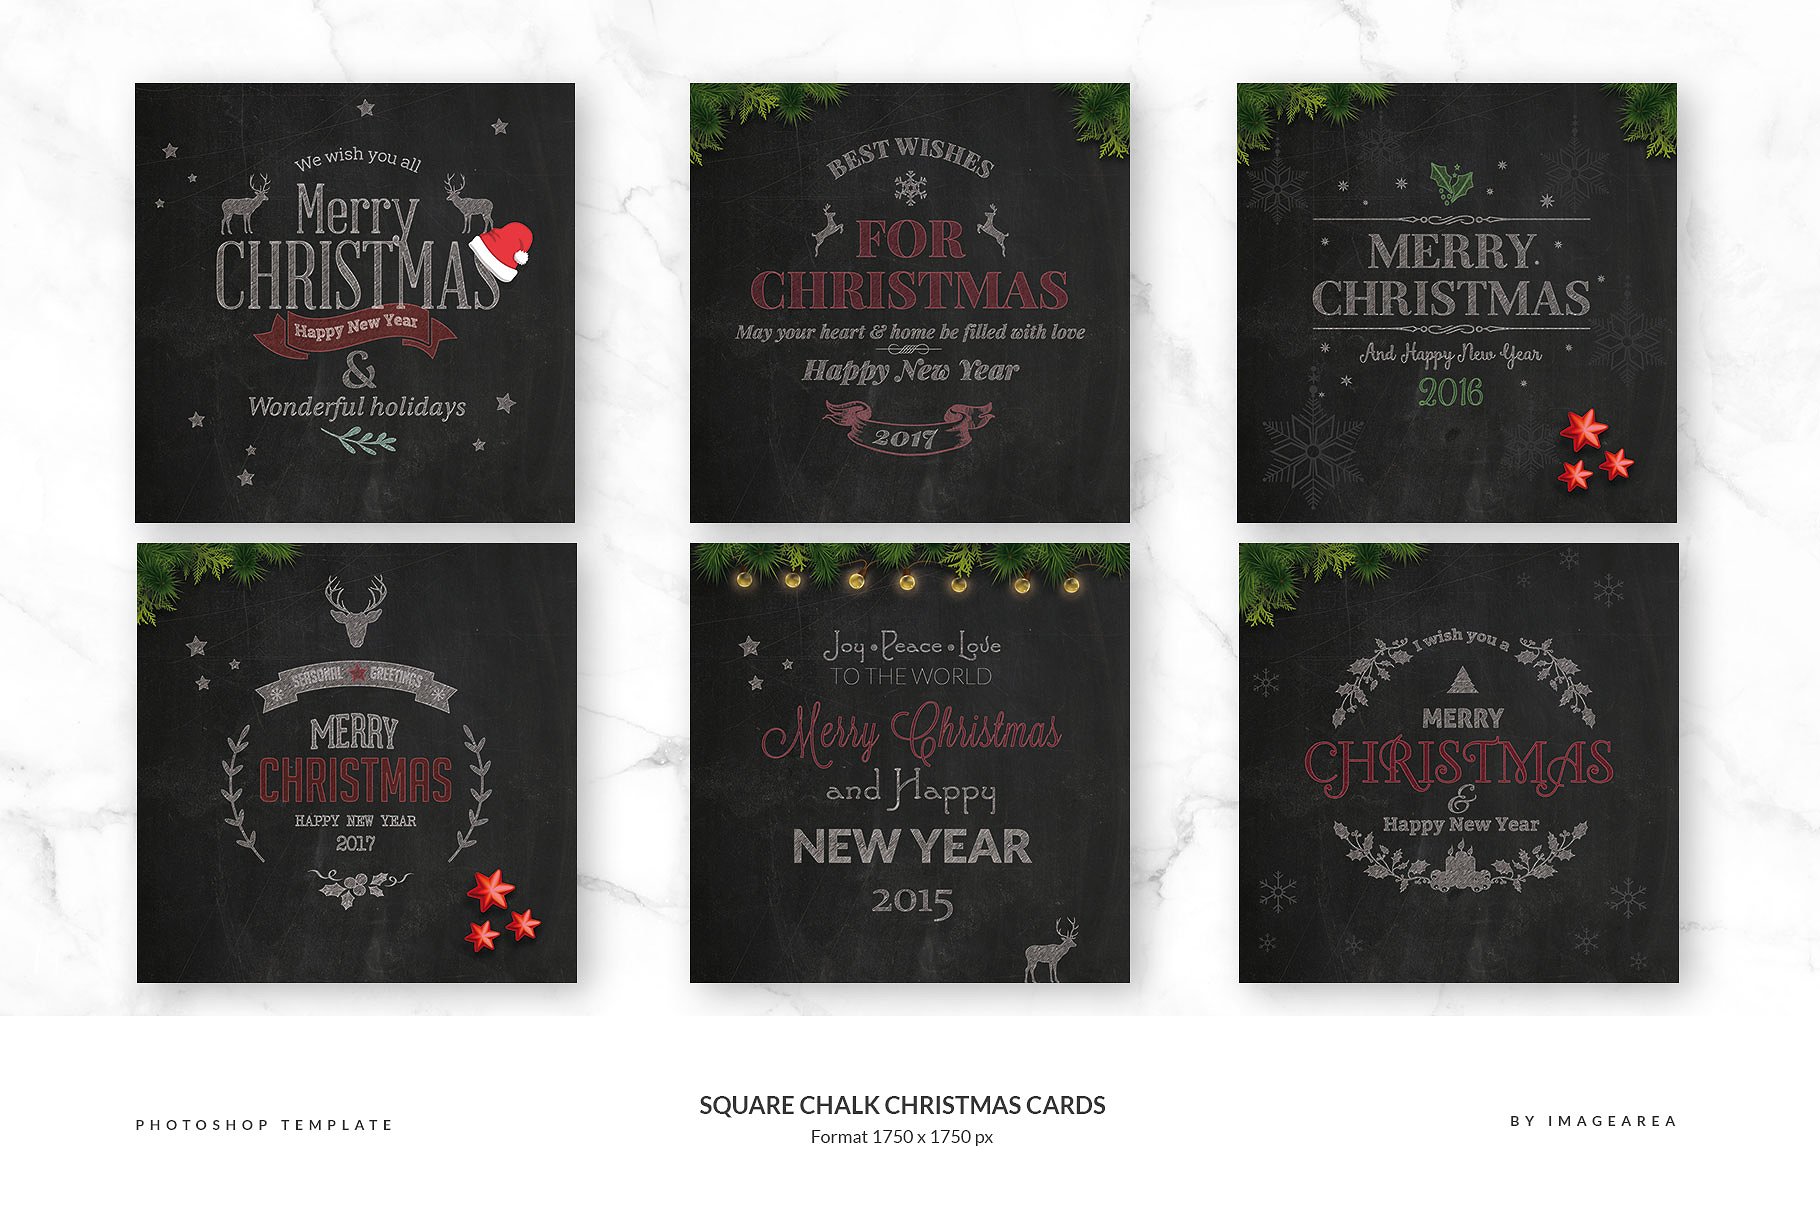 方形粉笔画圣诞贺卡模板 Square Chalk Christmas Cards插图